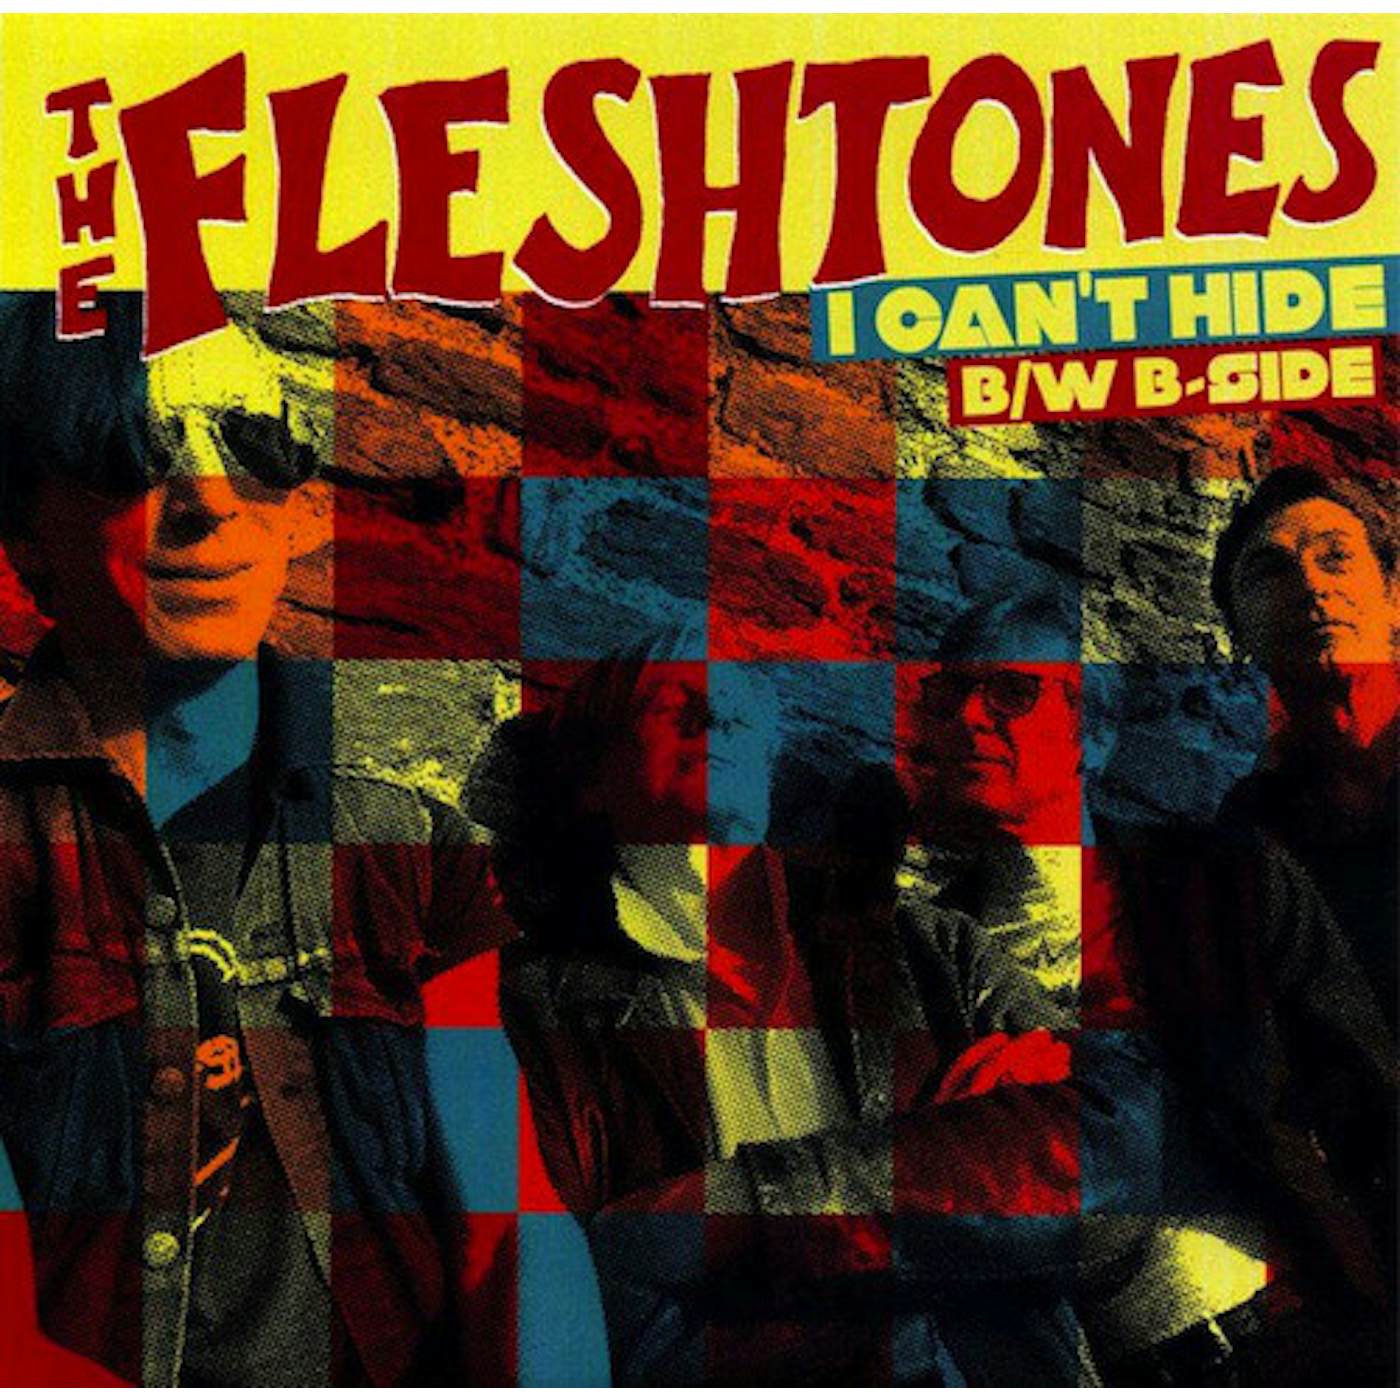 The Fleshtones I CAN HIDE (Vinyl)